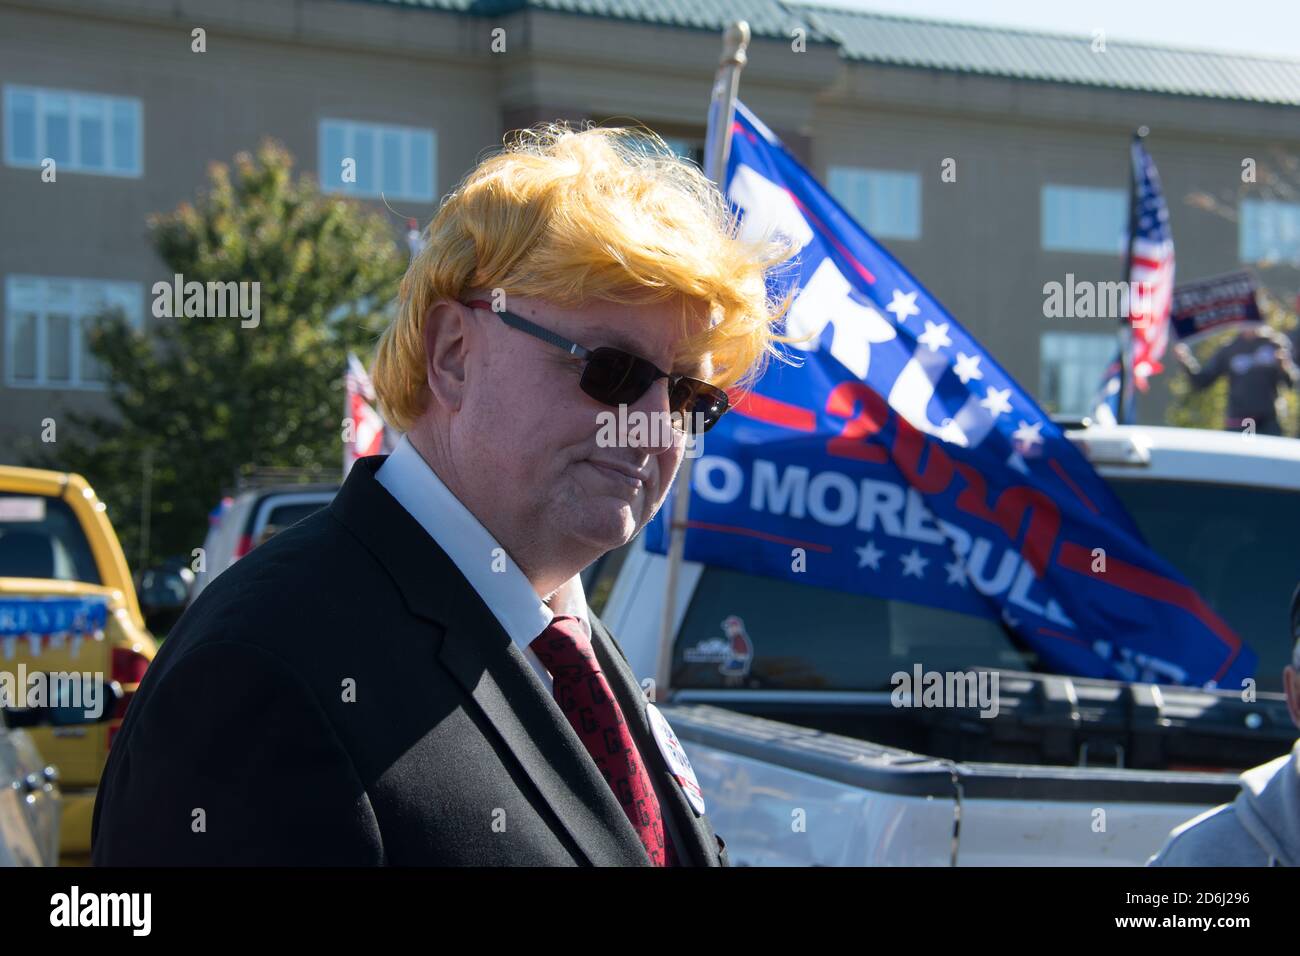 Newtown, Pennsylvanie, États-Unis - 10/17/2020: Les partisans du président Donald Trump se font la queue dans les voitures, les camions et les motos et se conduisent en Pennsylvanie, à partir de N Banque D'Images